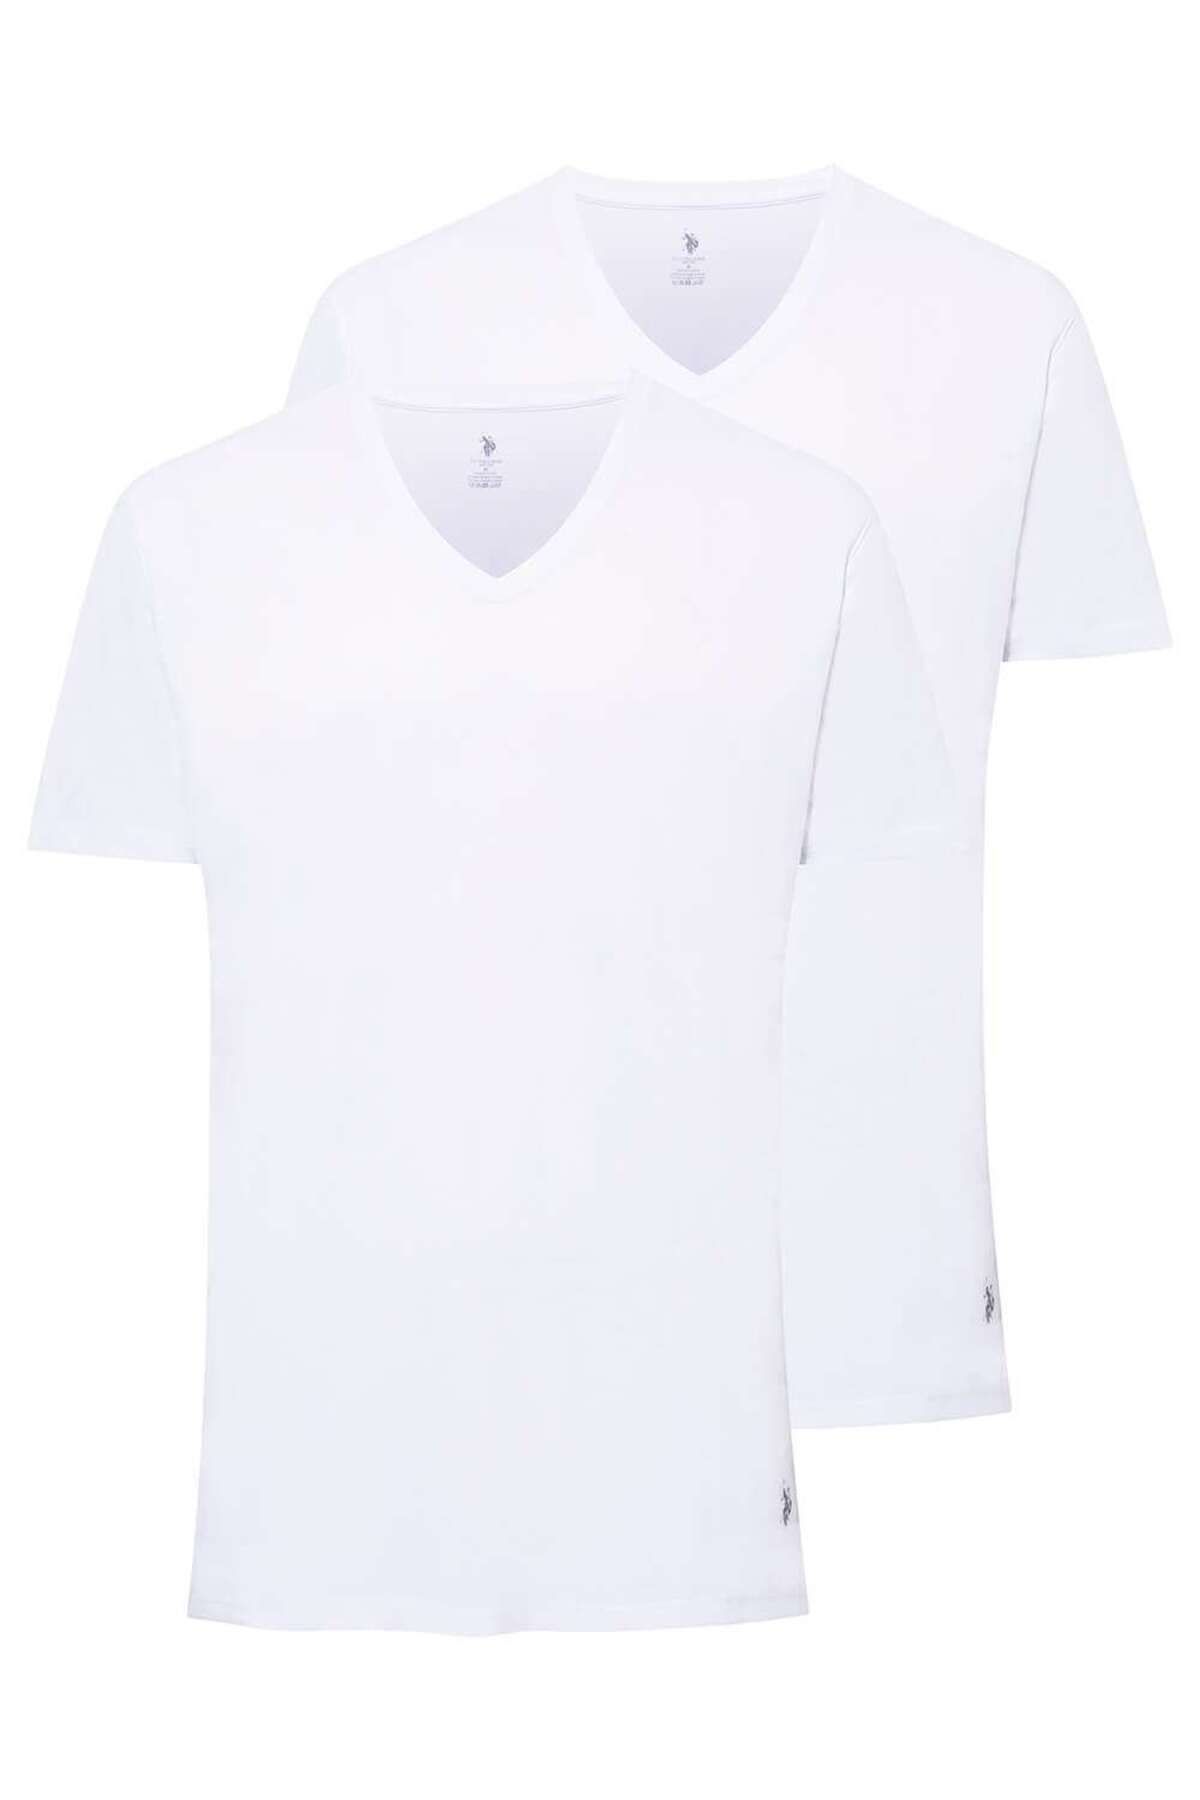 U.S. Polo Assn. Erkek Beyaz 2 Li T-shirt 80199